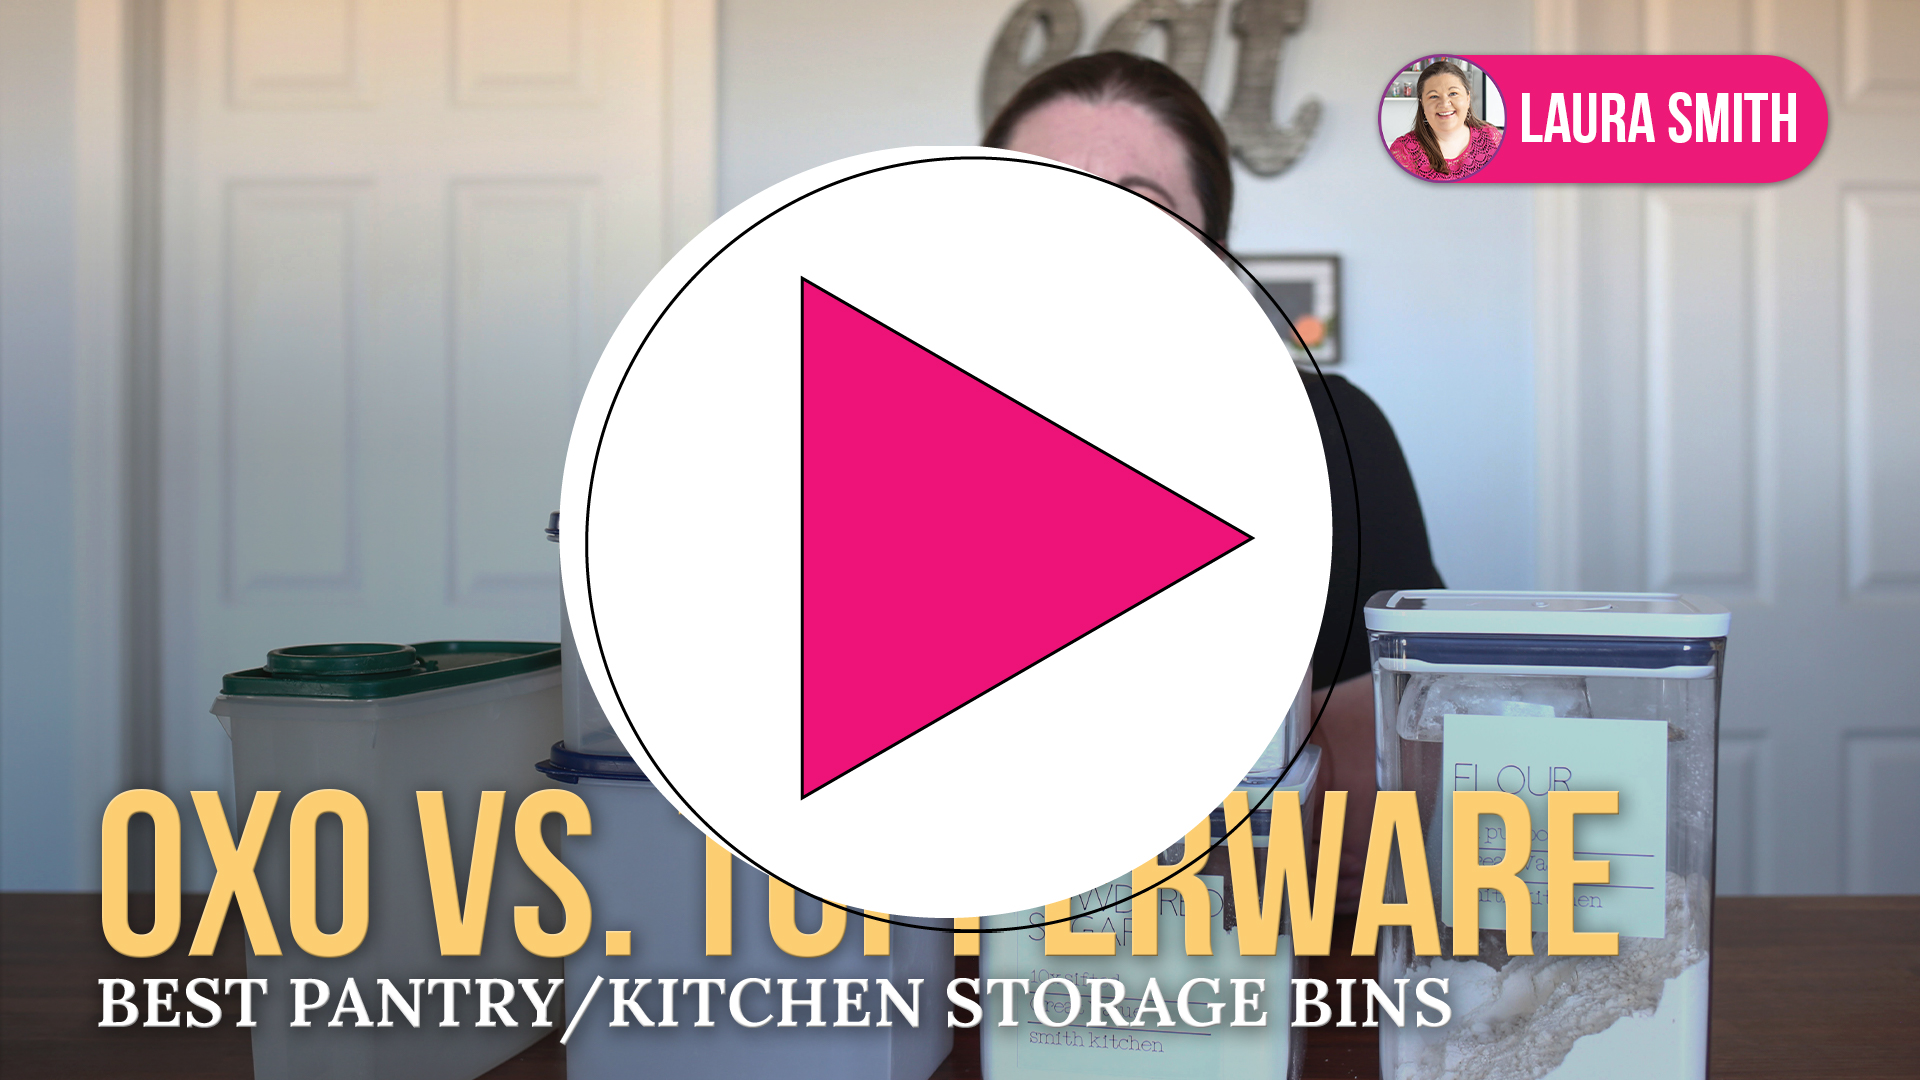 Tupperware Pink Kitchen & dining Storage & Organization